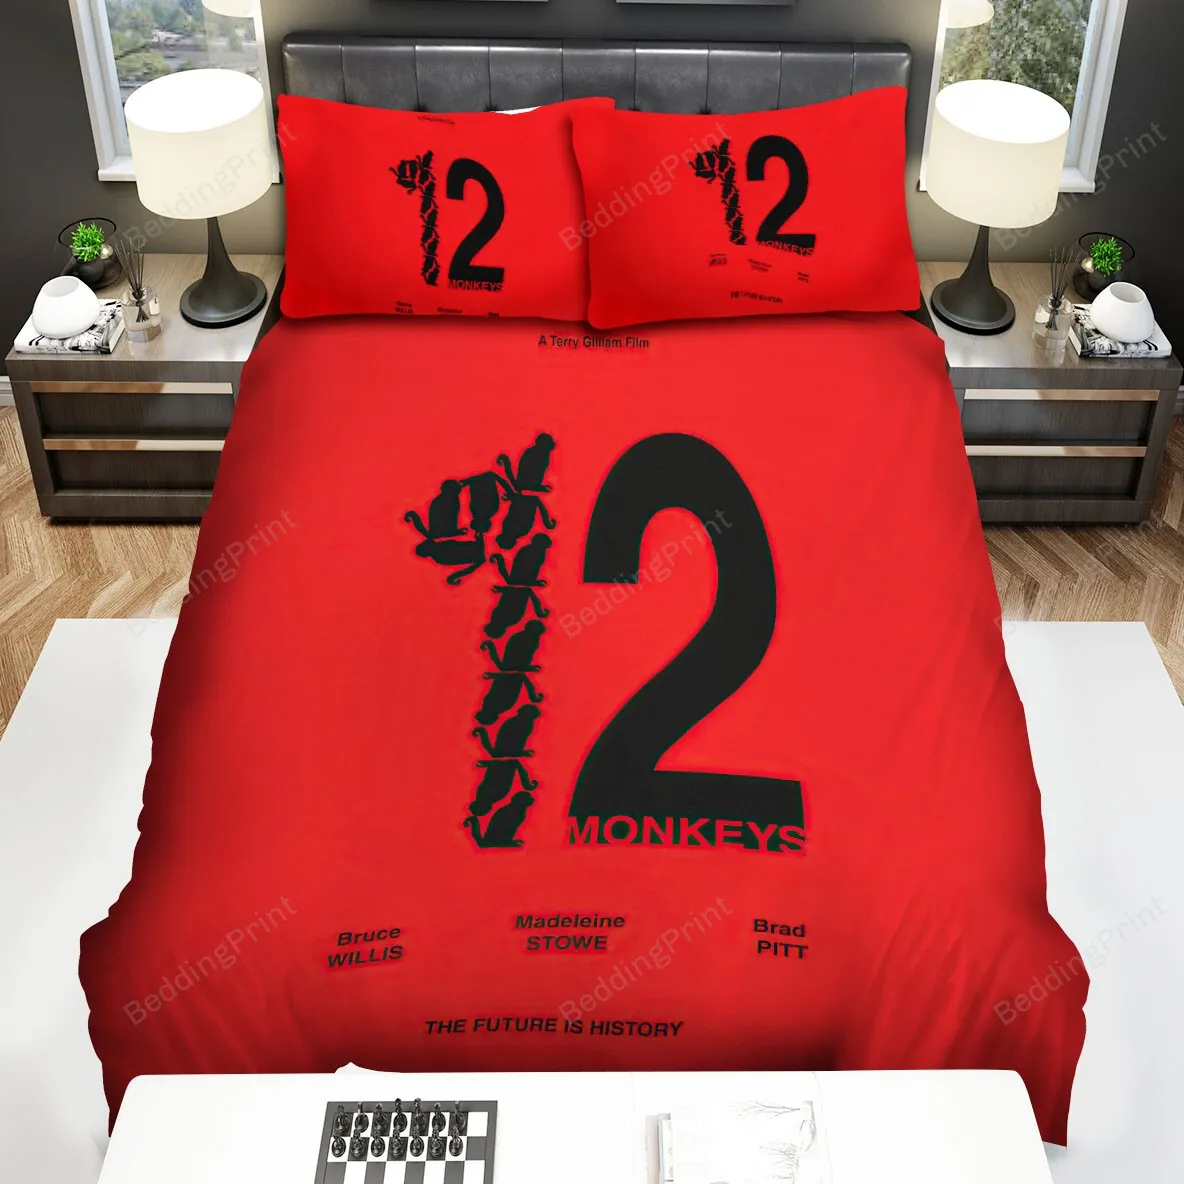 12 Monkeys (20152018) Poster Movie Poster Bed Sheets Spread Comforter Duvet Cover Bedding Sets Ver 6